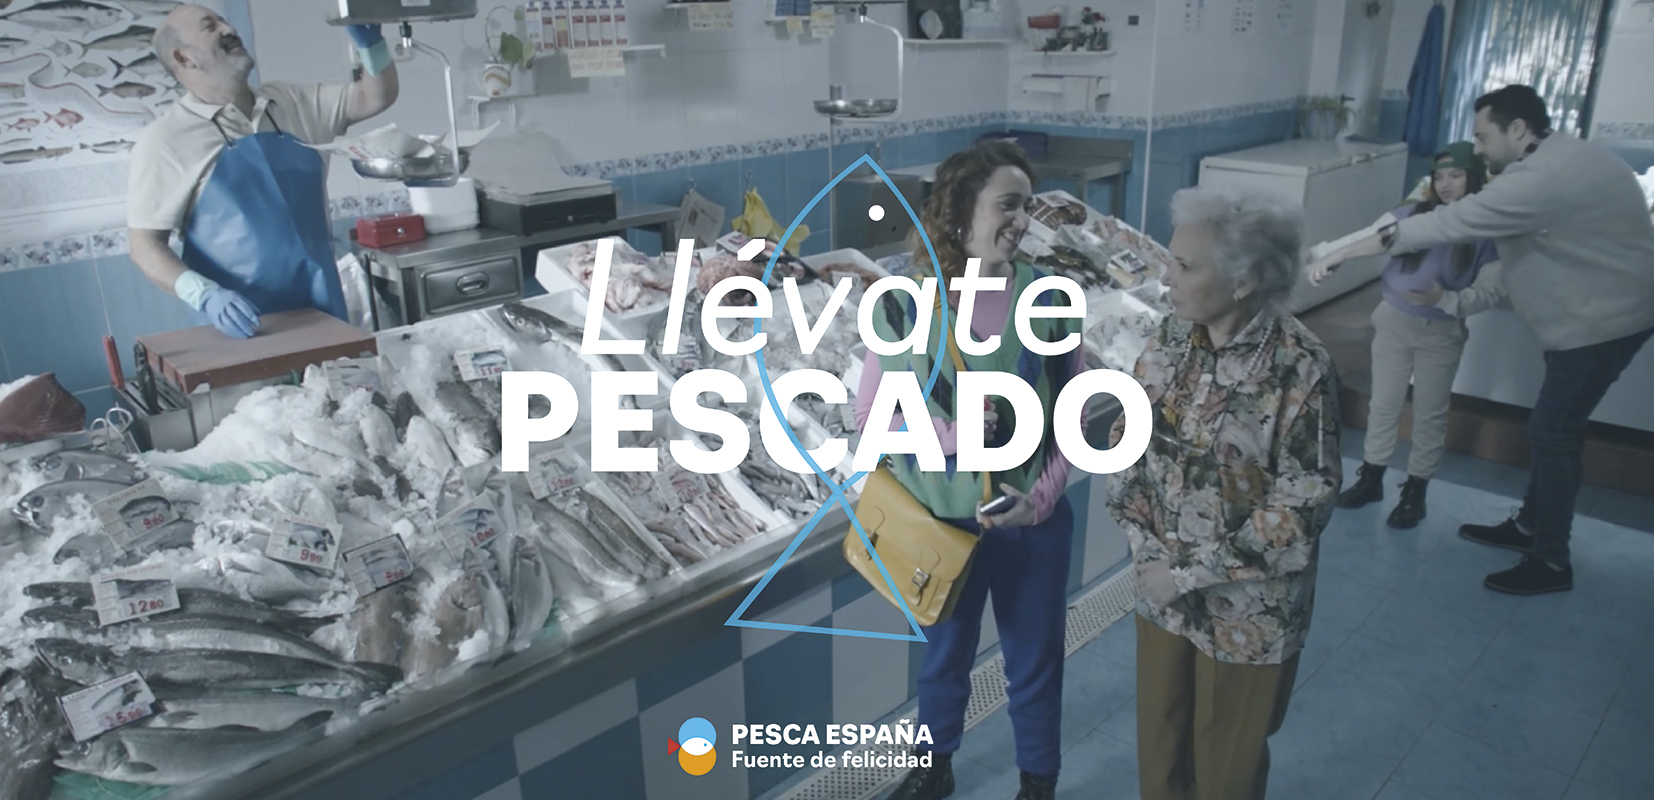 Cartel promocional de la campaña Llévate pescado de Pesca España